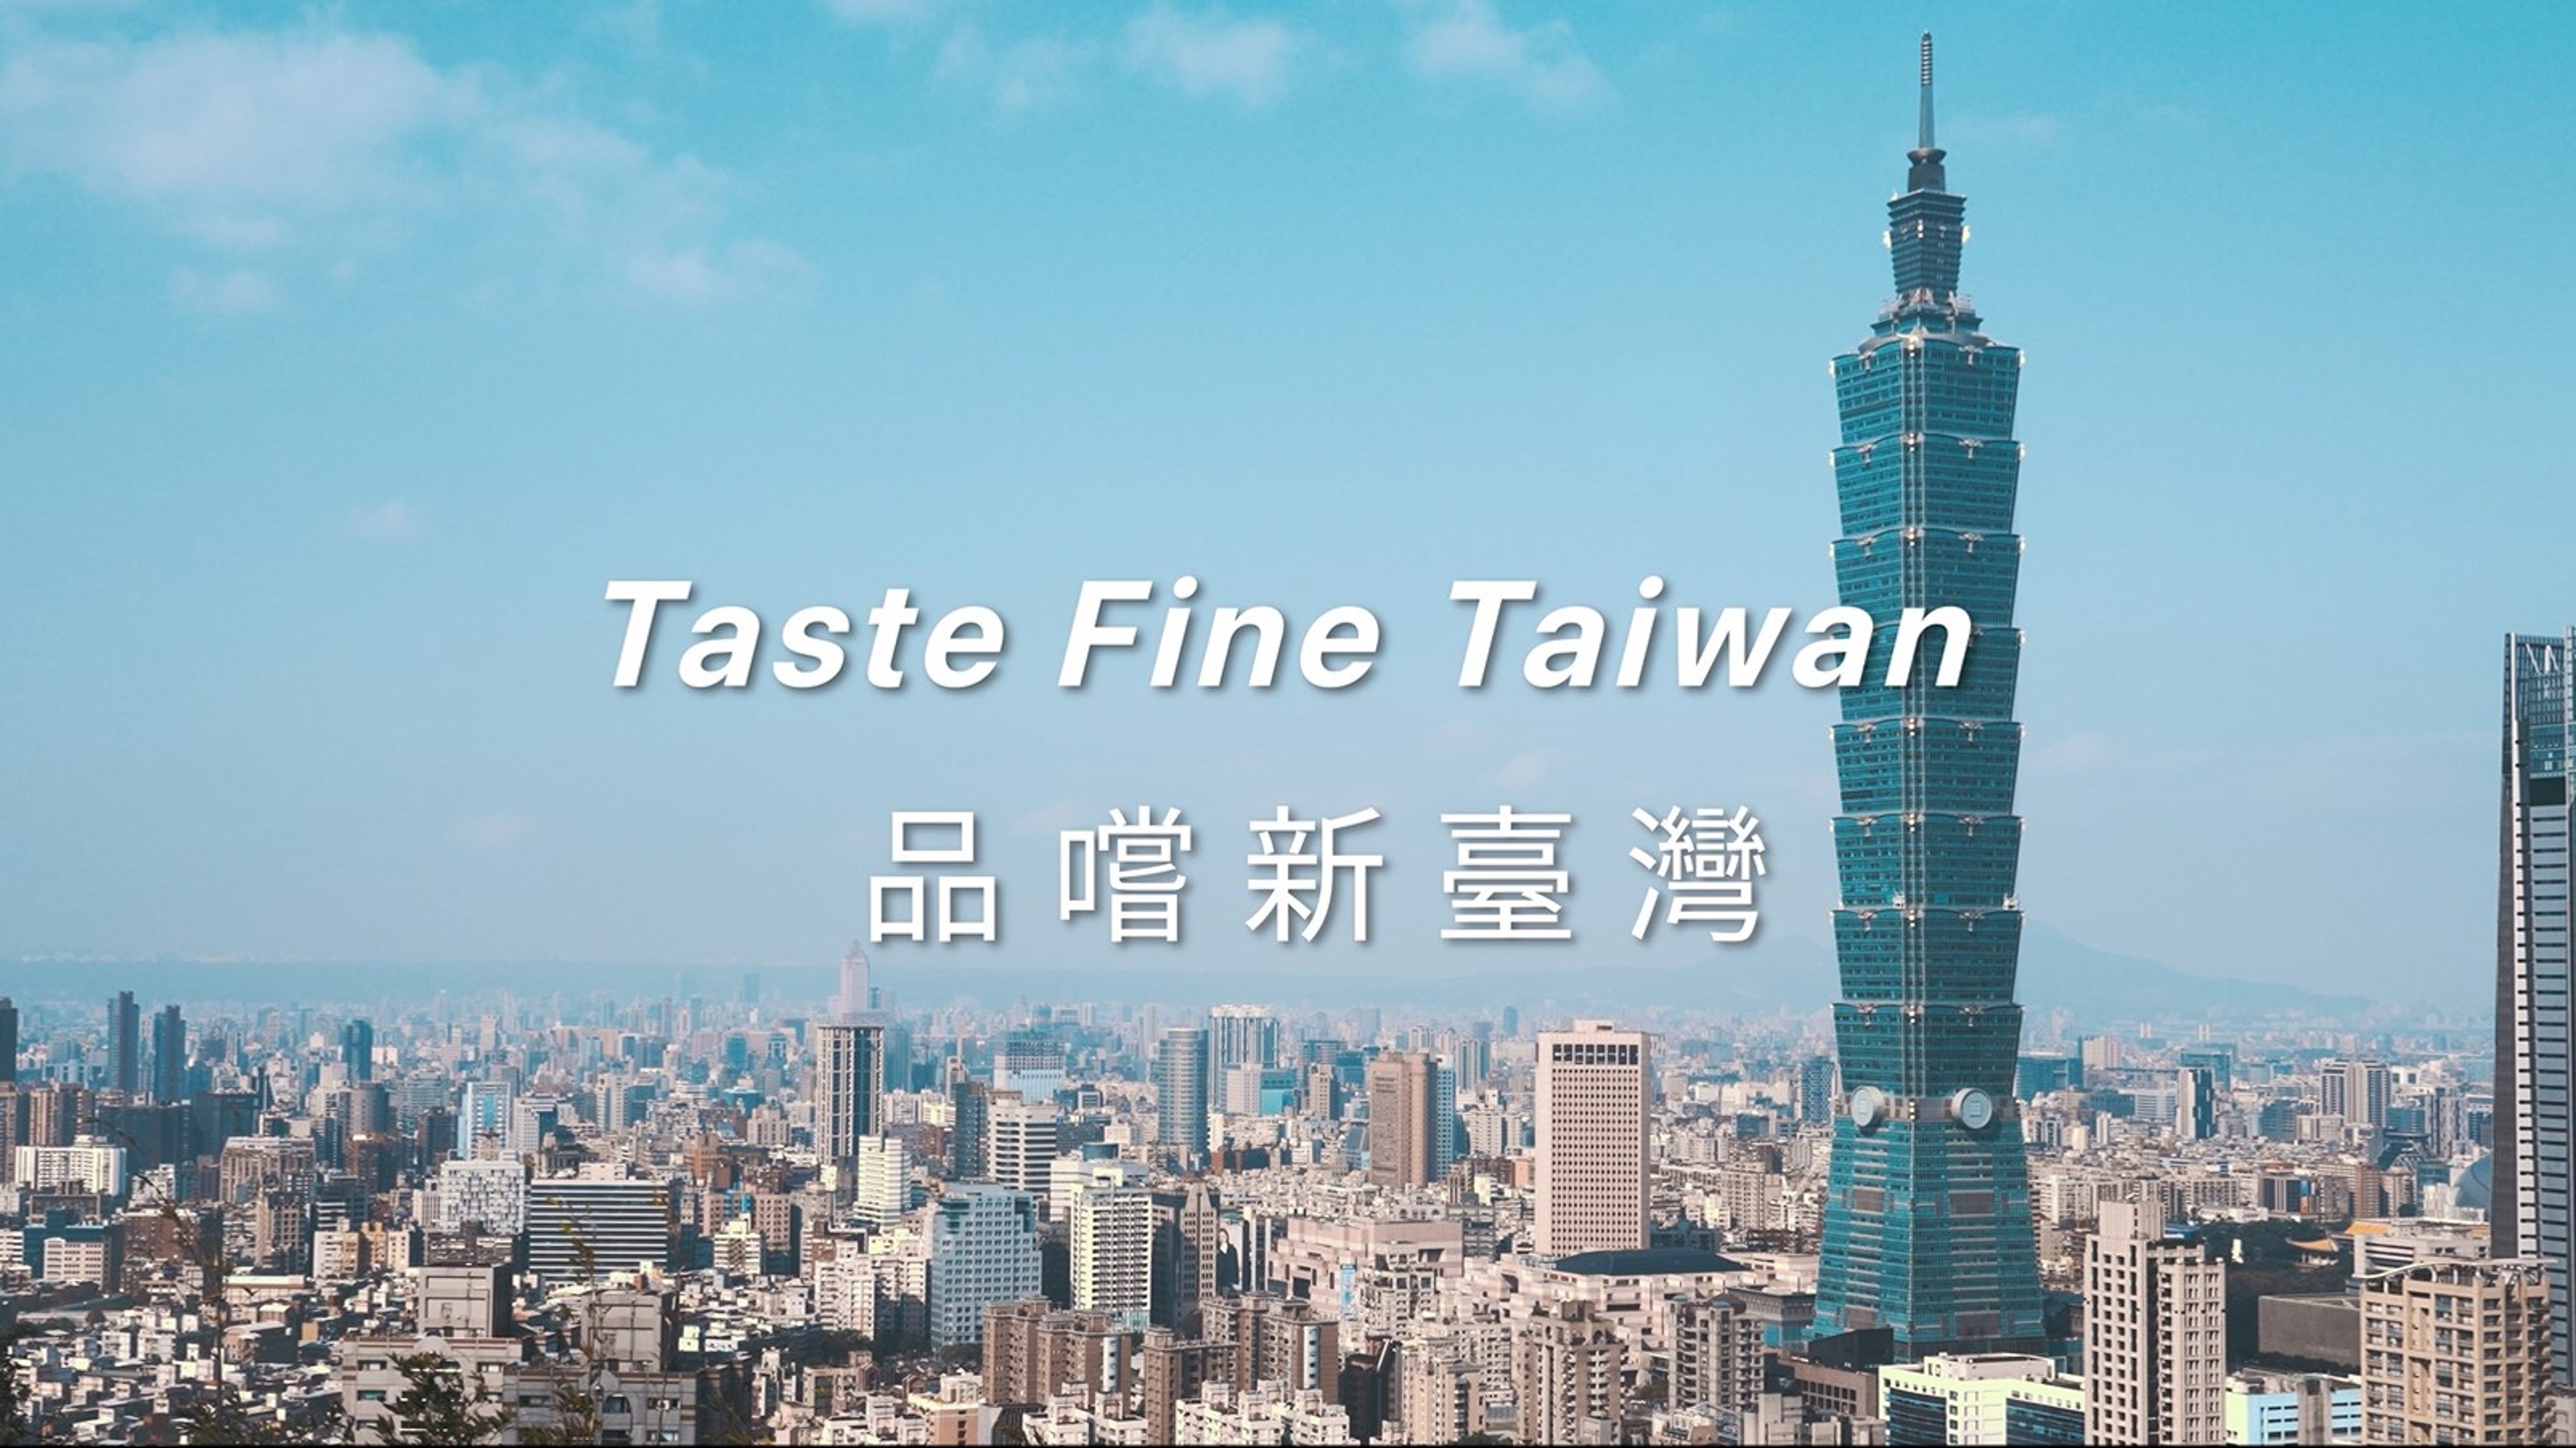 《品嚐新台灣》公視首播  探索台灣美食職人心路歷程